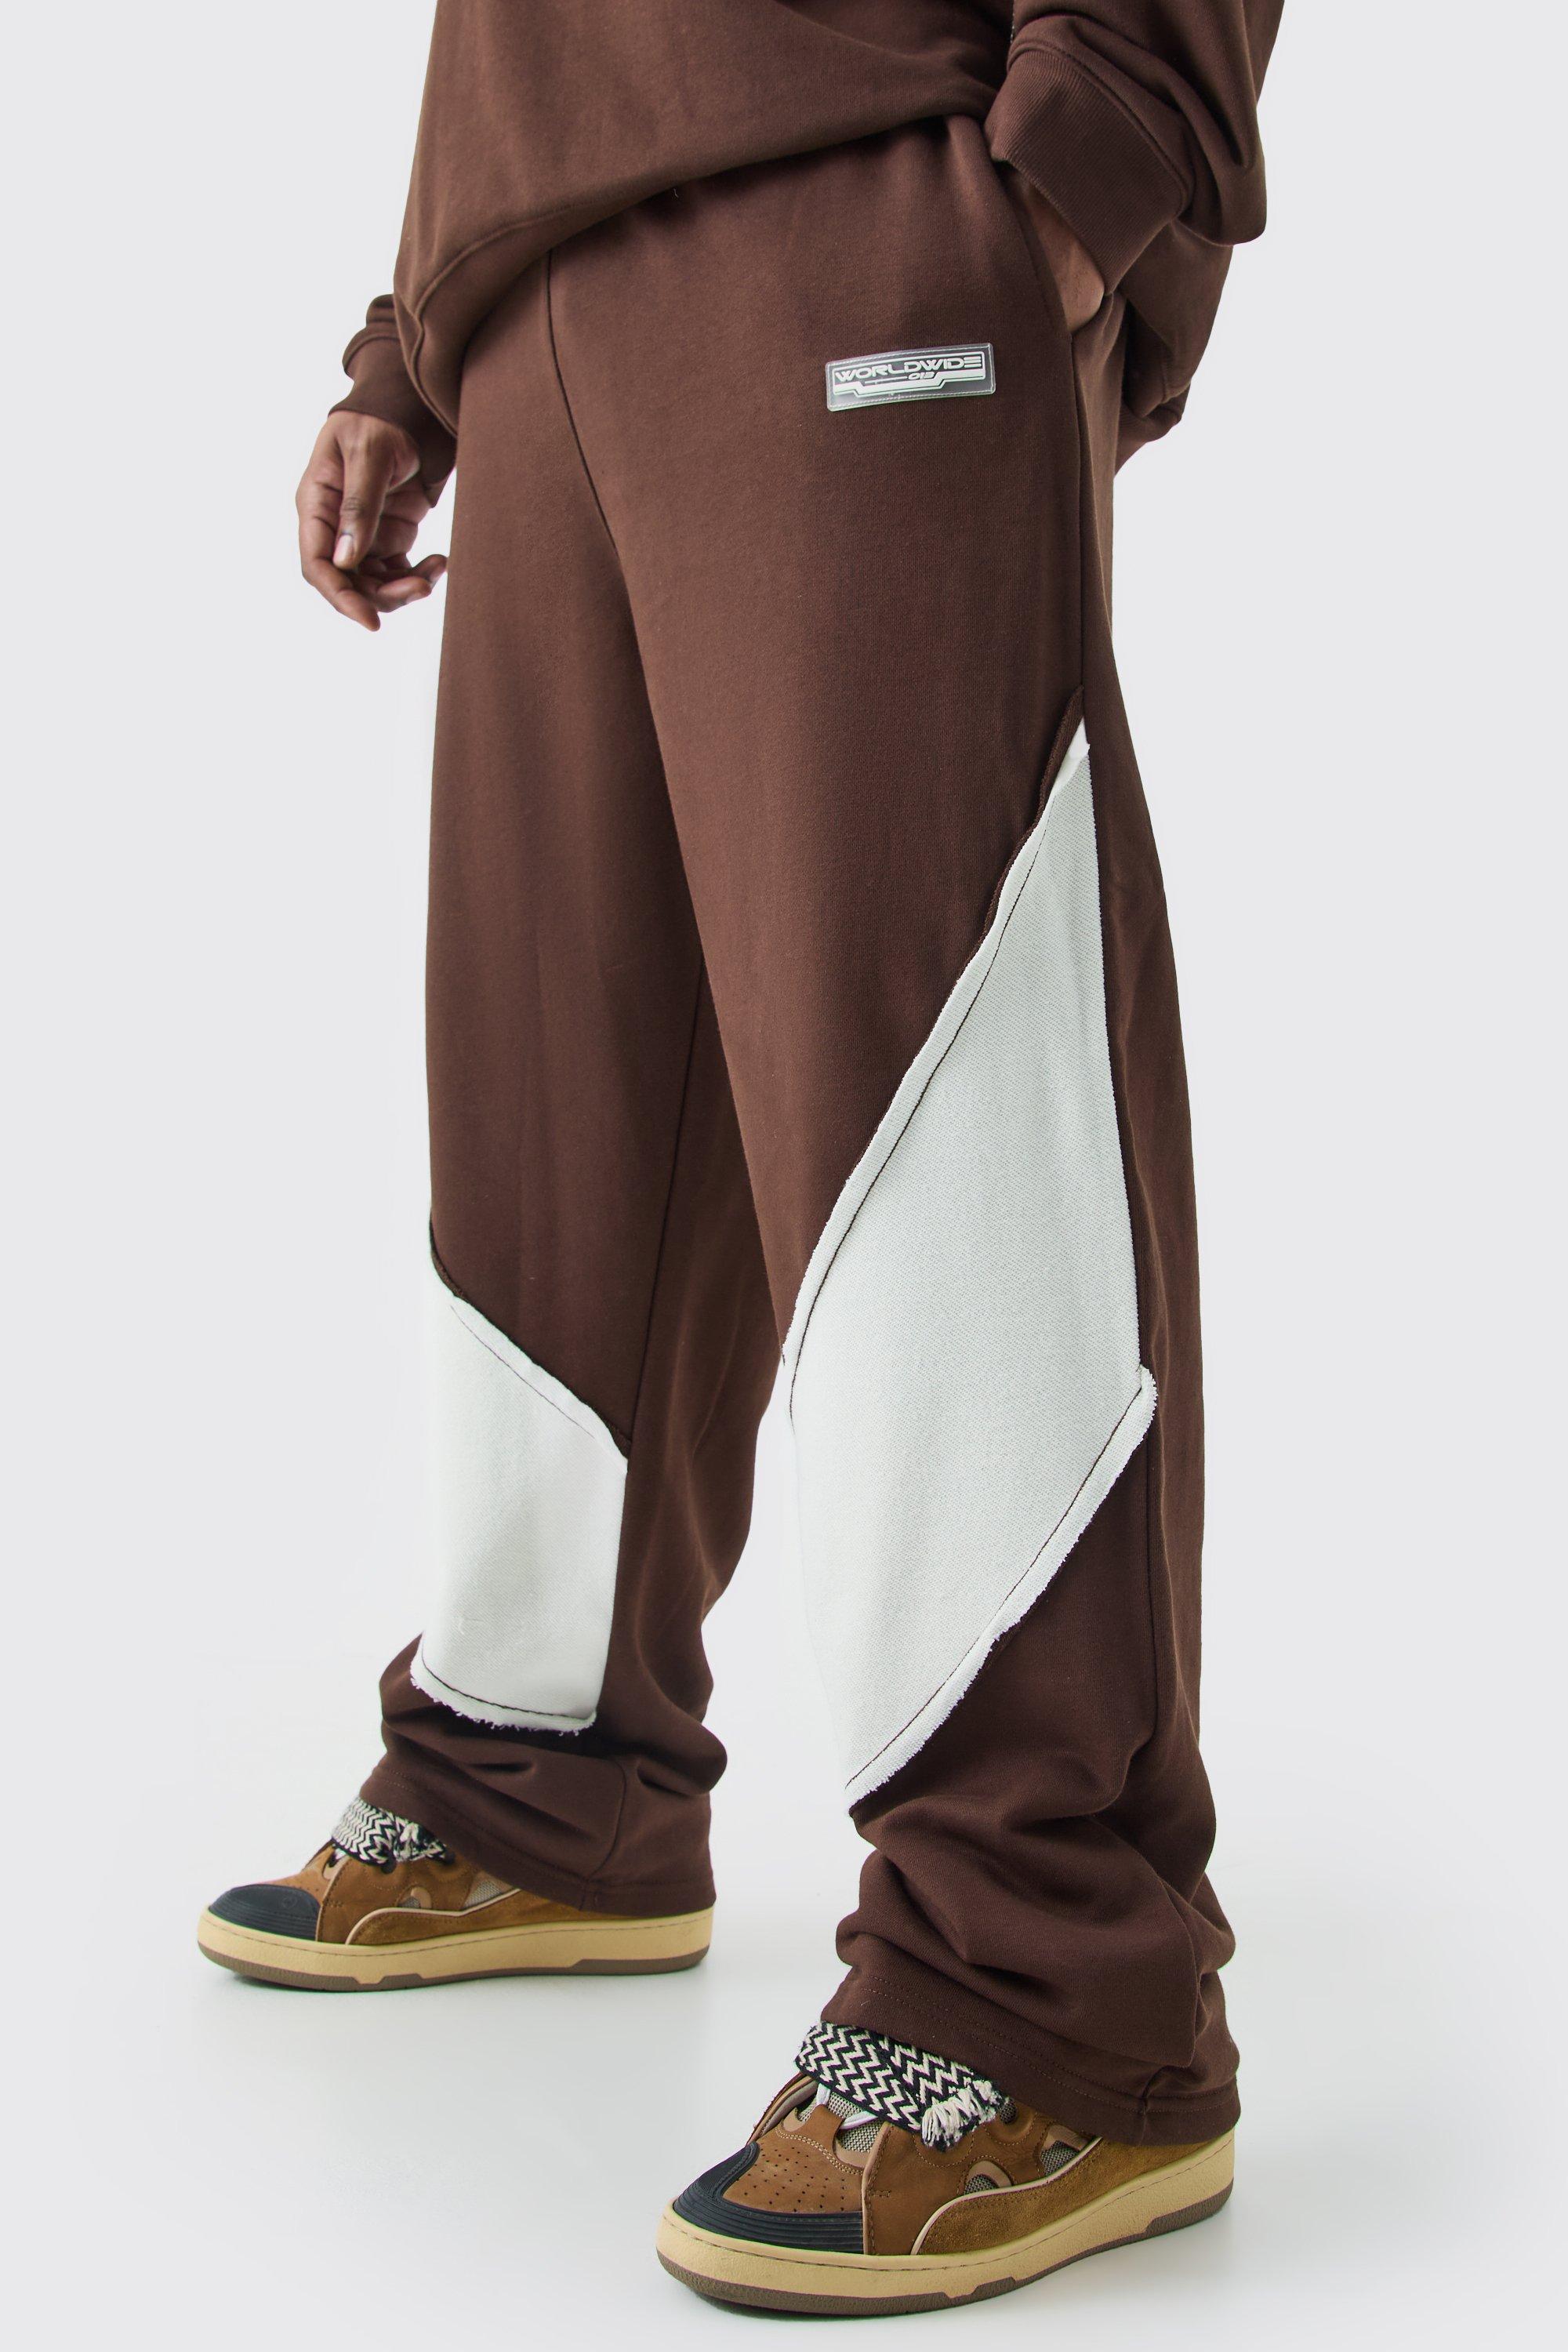 Image of Pantaloni tuta Plus Size rilassati con pannelli arricciati sul retro e fondo grezzo, Brown